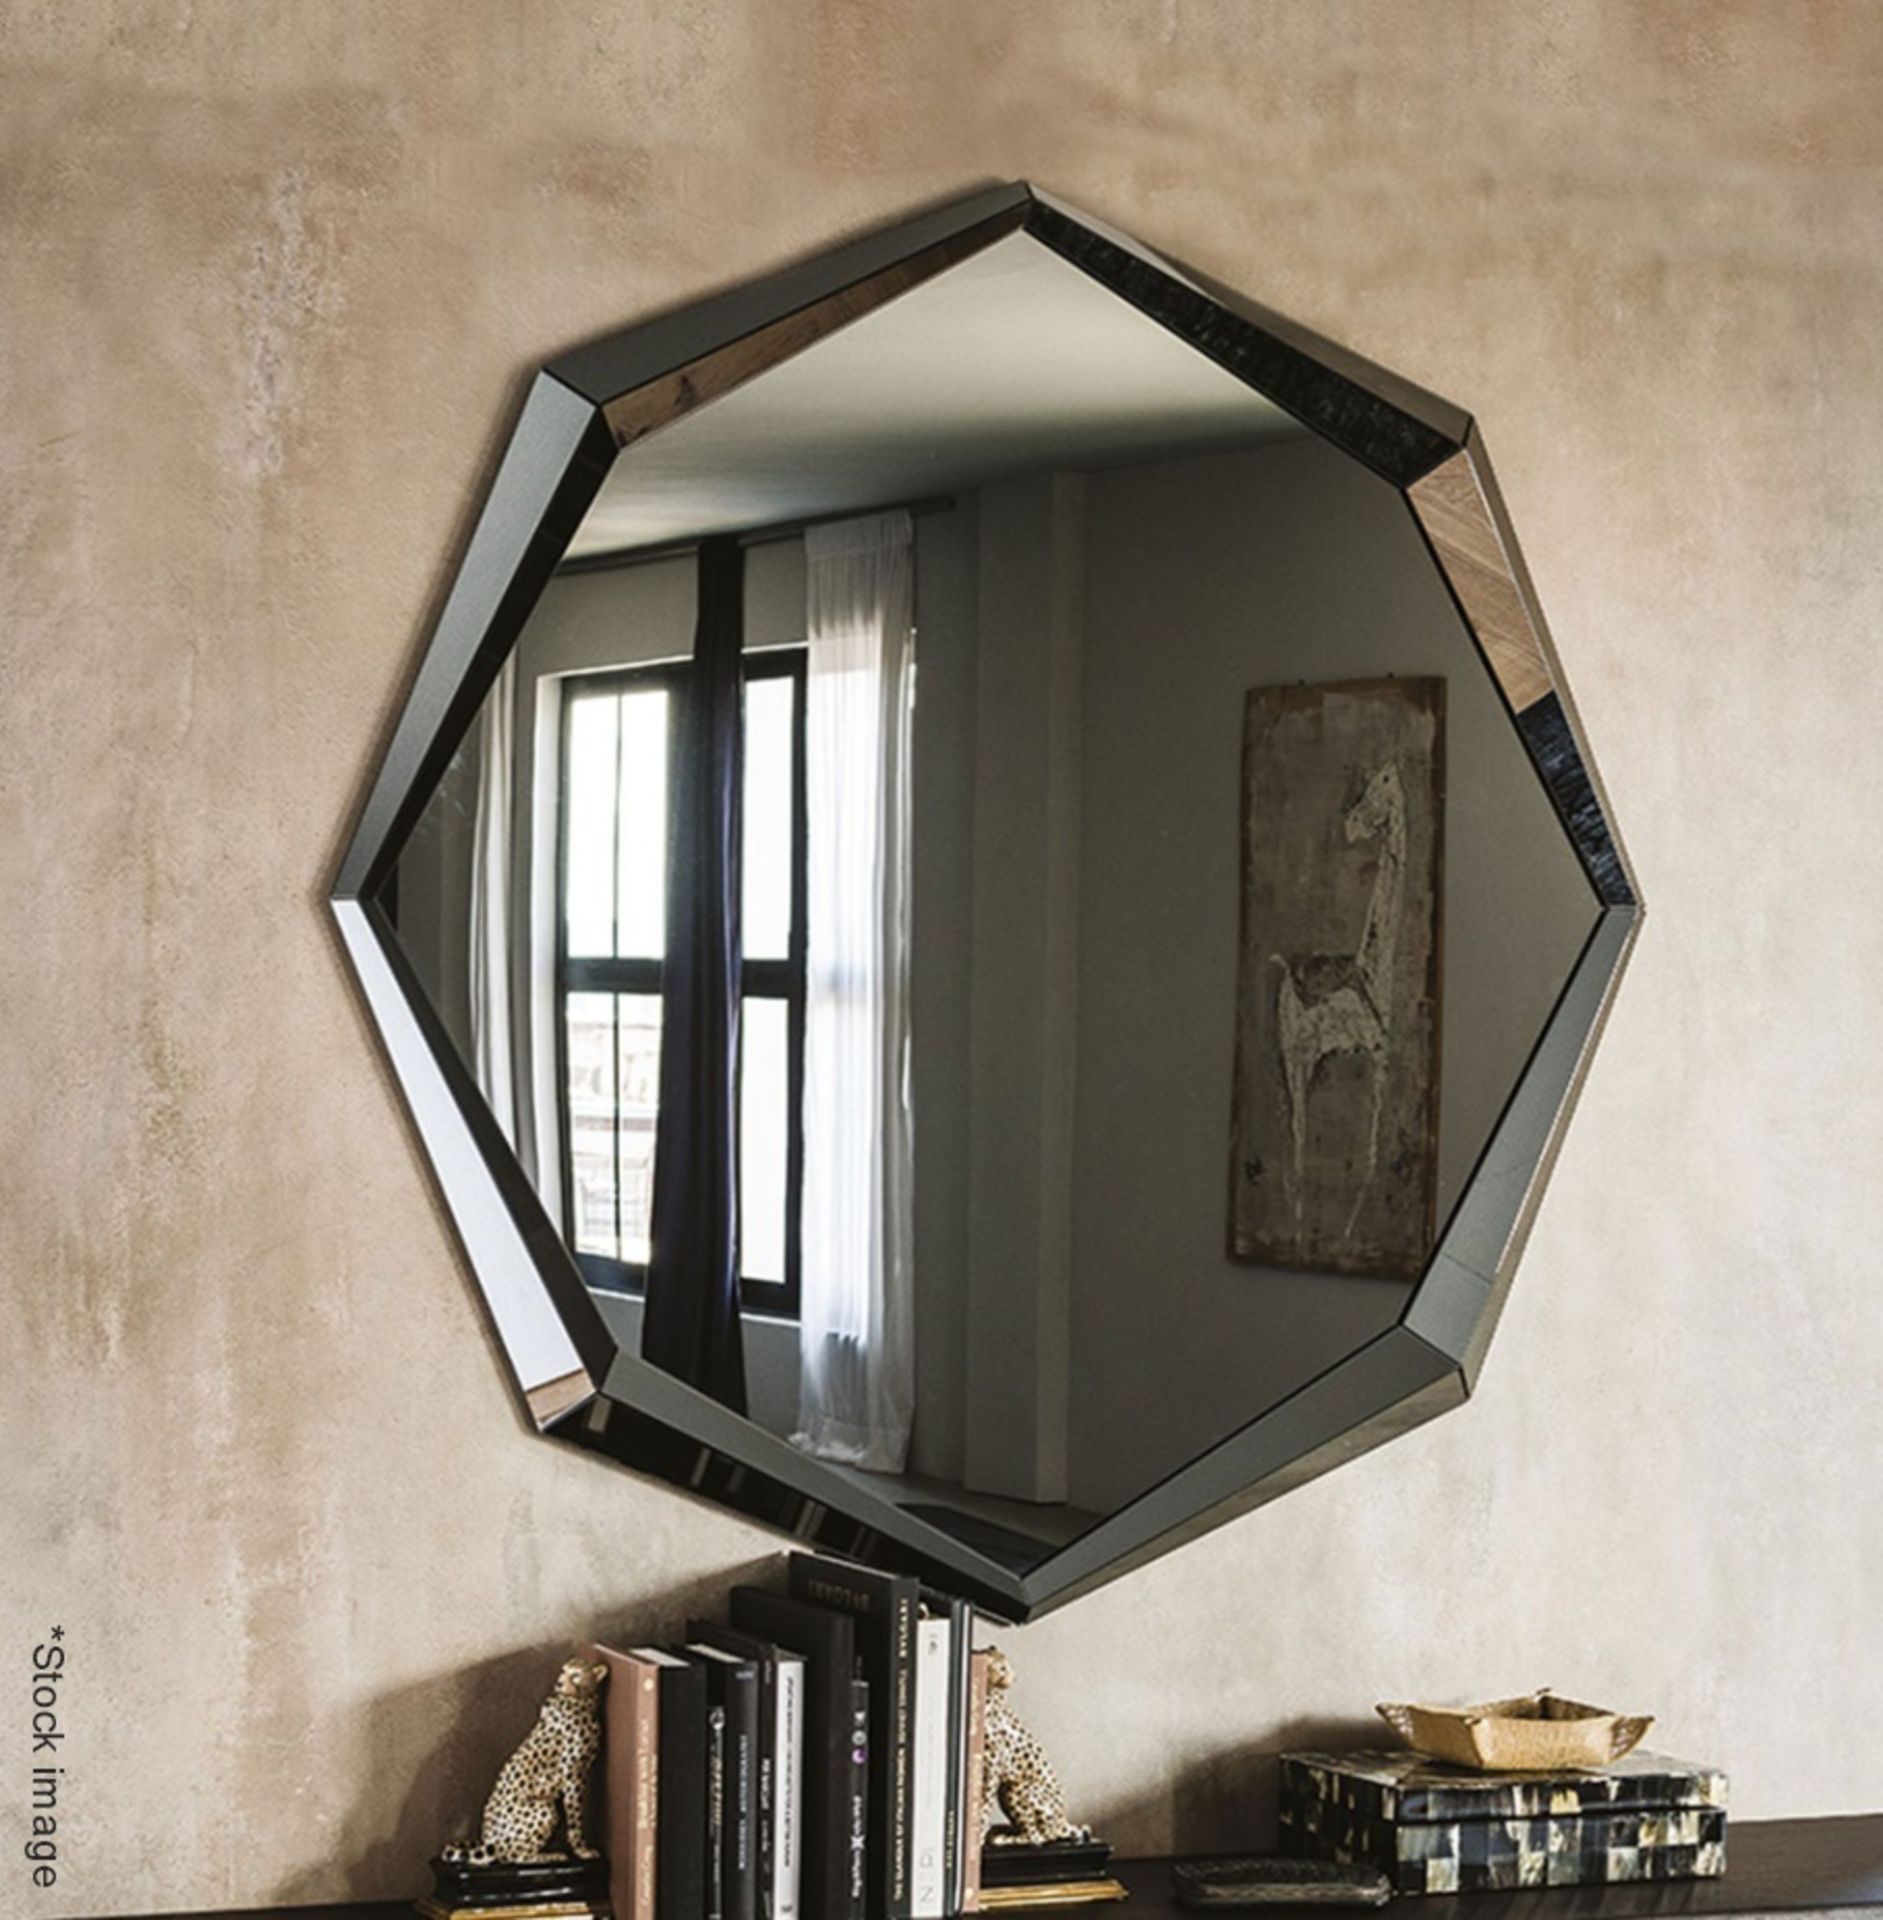 1 x CATTELAN ITALIA 'Emerald' Designer Mirror, 130 x 130cm - Original Price £1,425 - Image 2 of 6